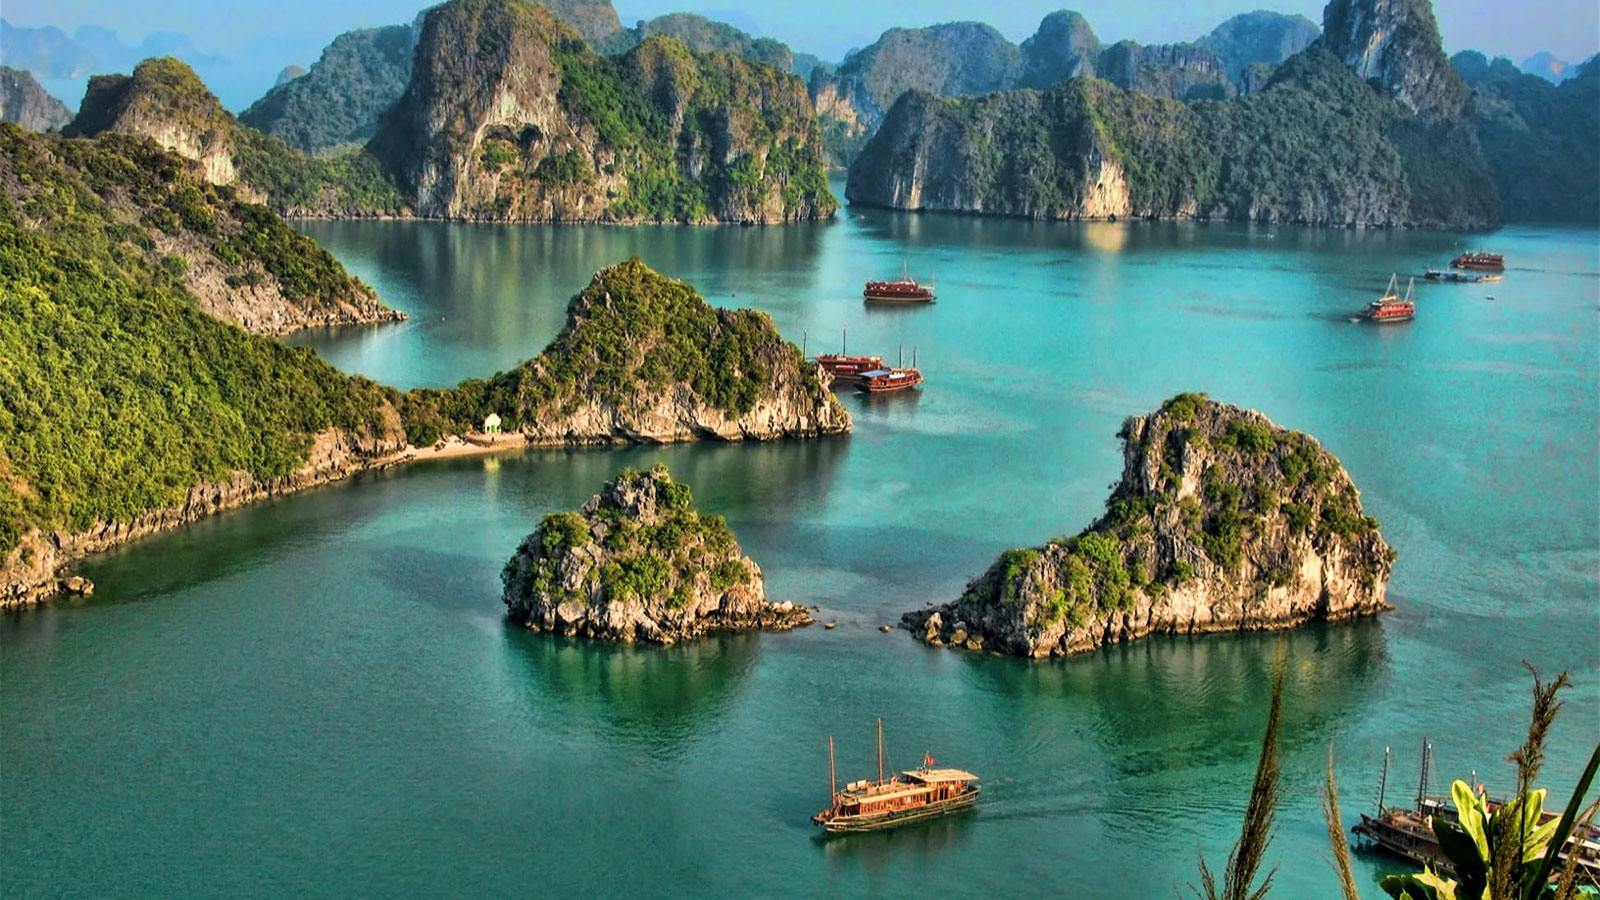 Mở cửa du lịch, chỉ đón khách quốc tế vào, chưa đưa khách Việt đi vì 'không có đường về'